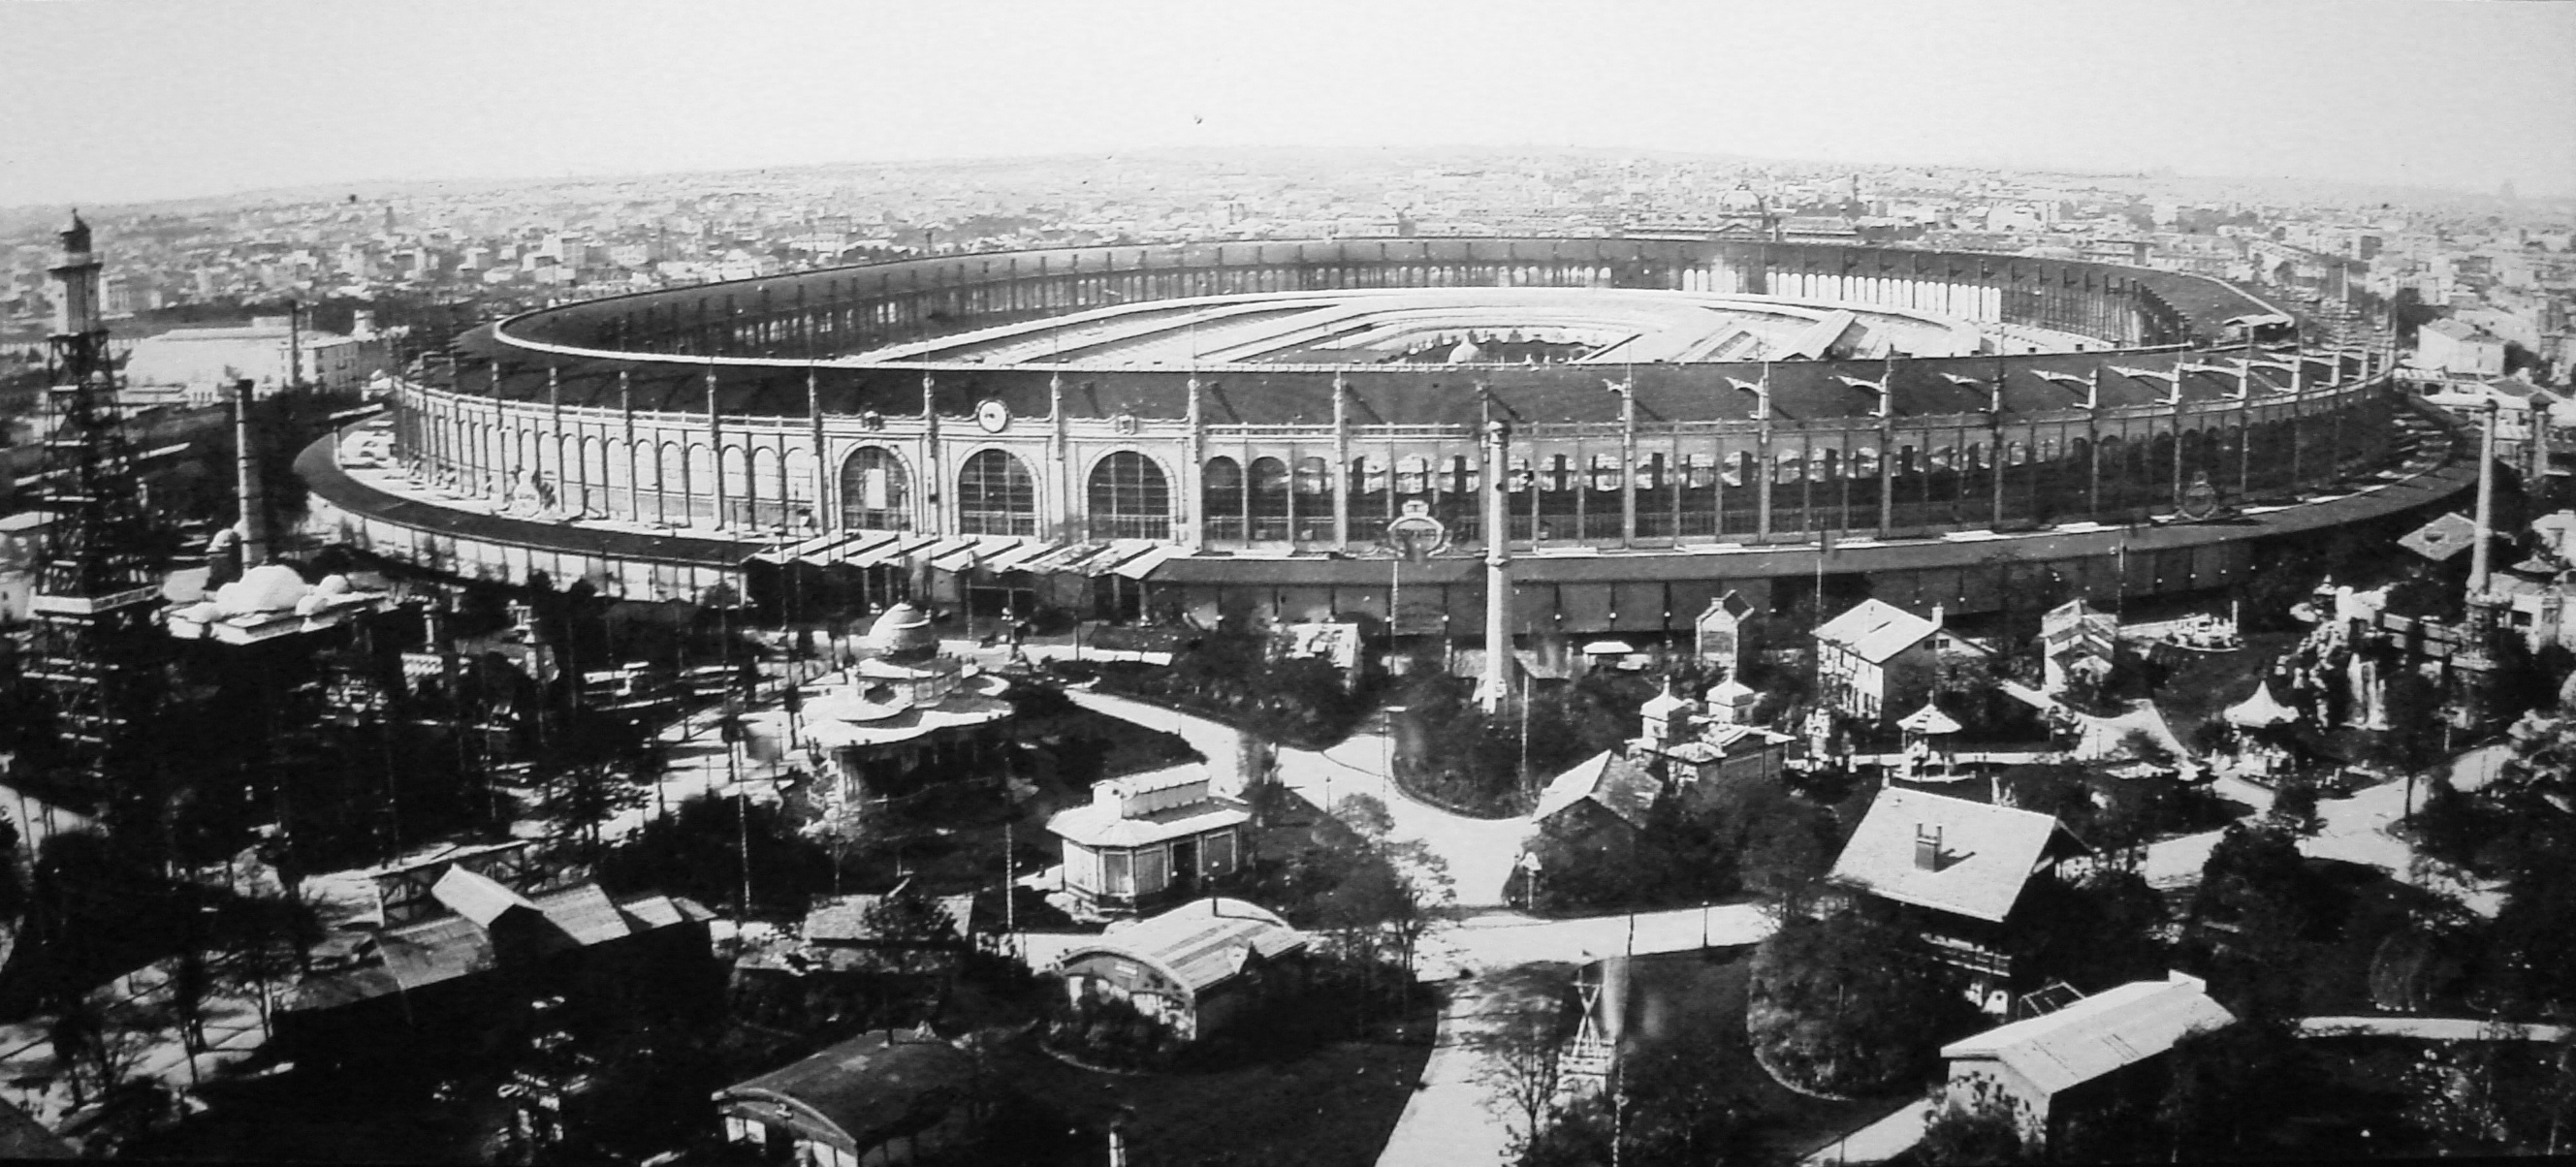 Exposition universelle de Liège de 1905 — Wikipédia